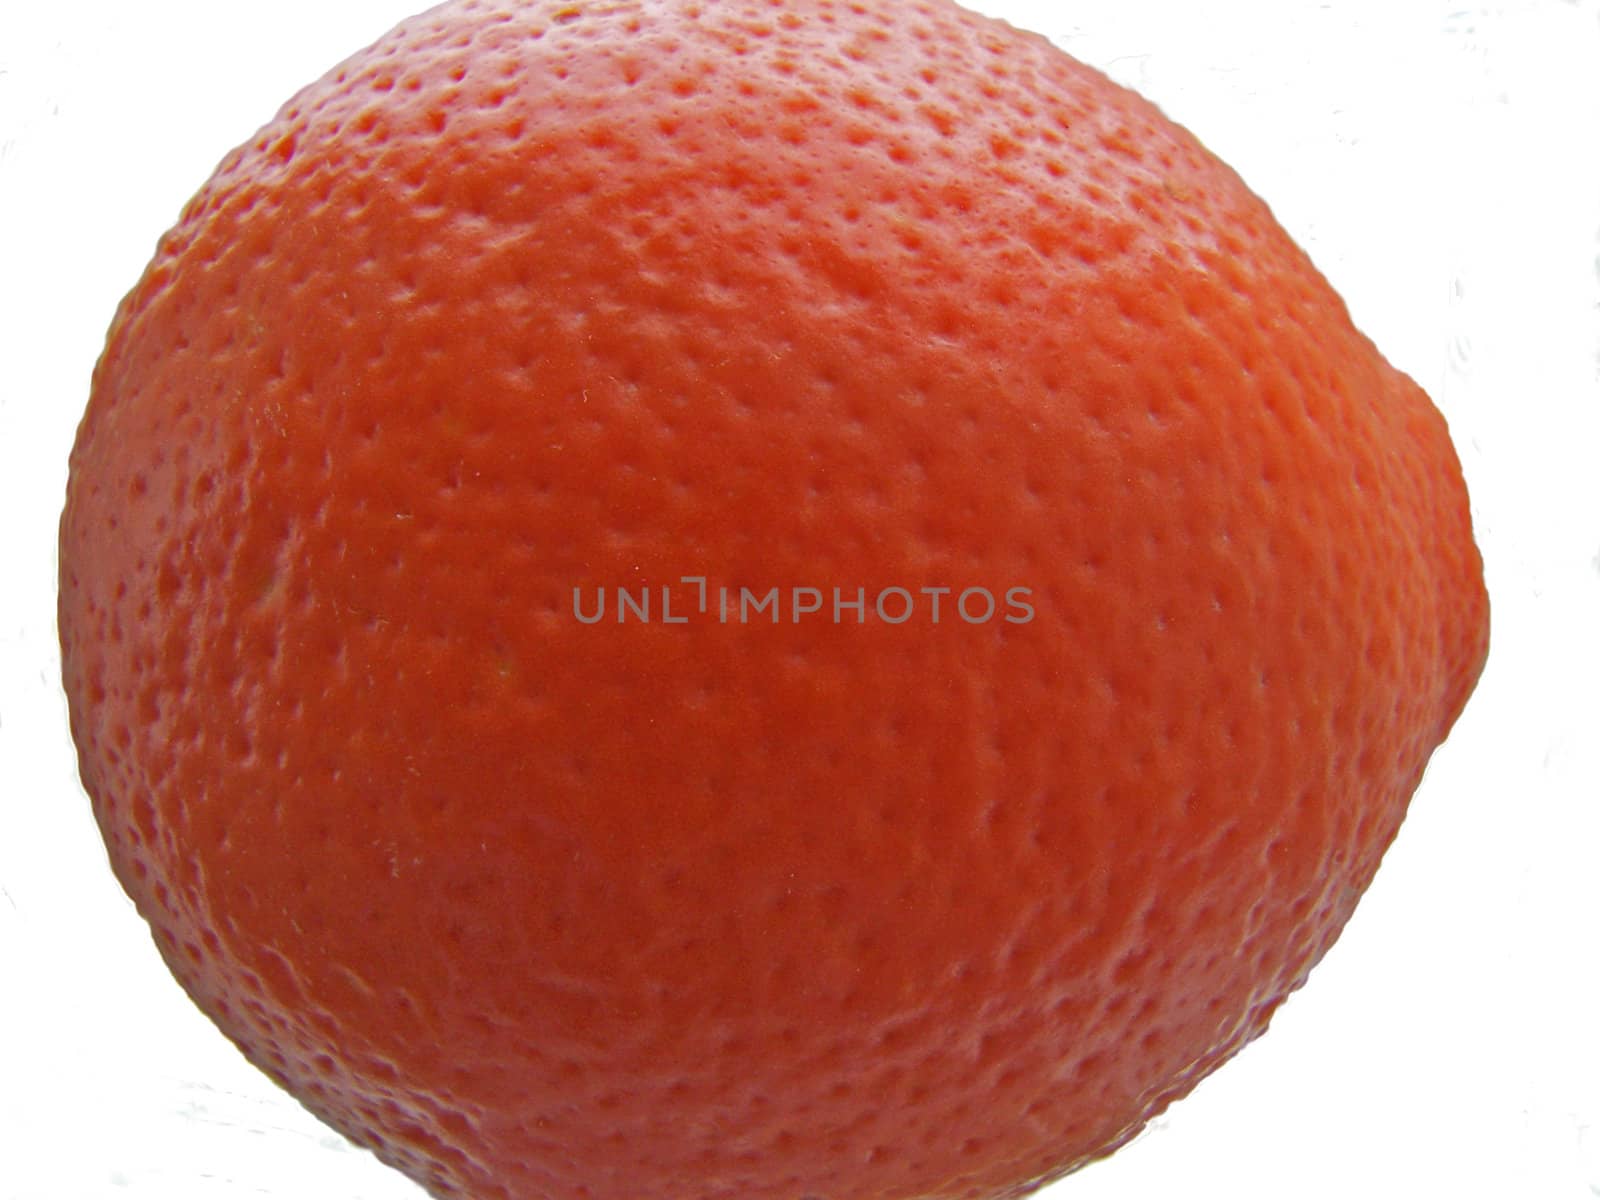 Fresh tangerine by Lessadar